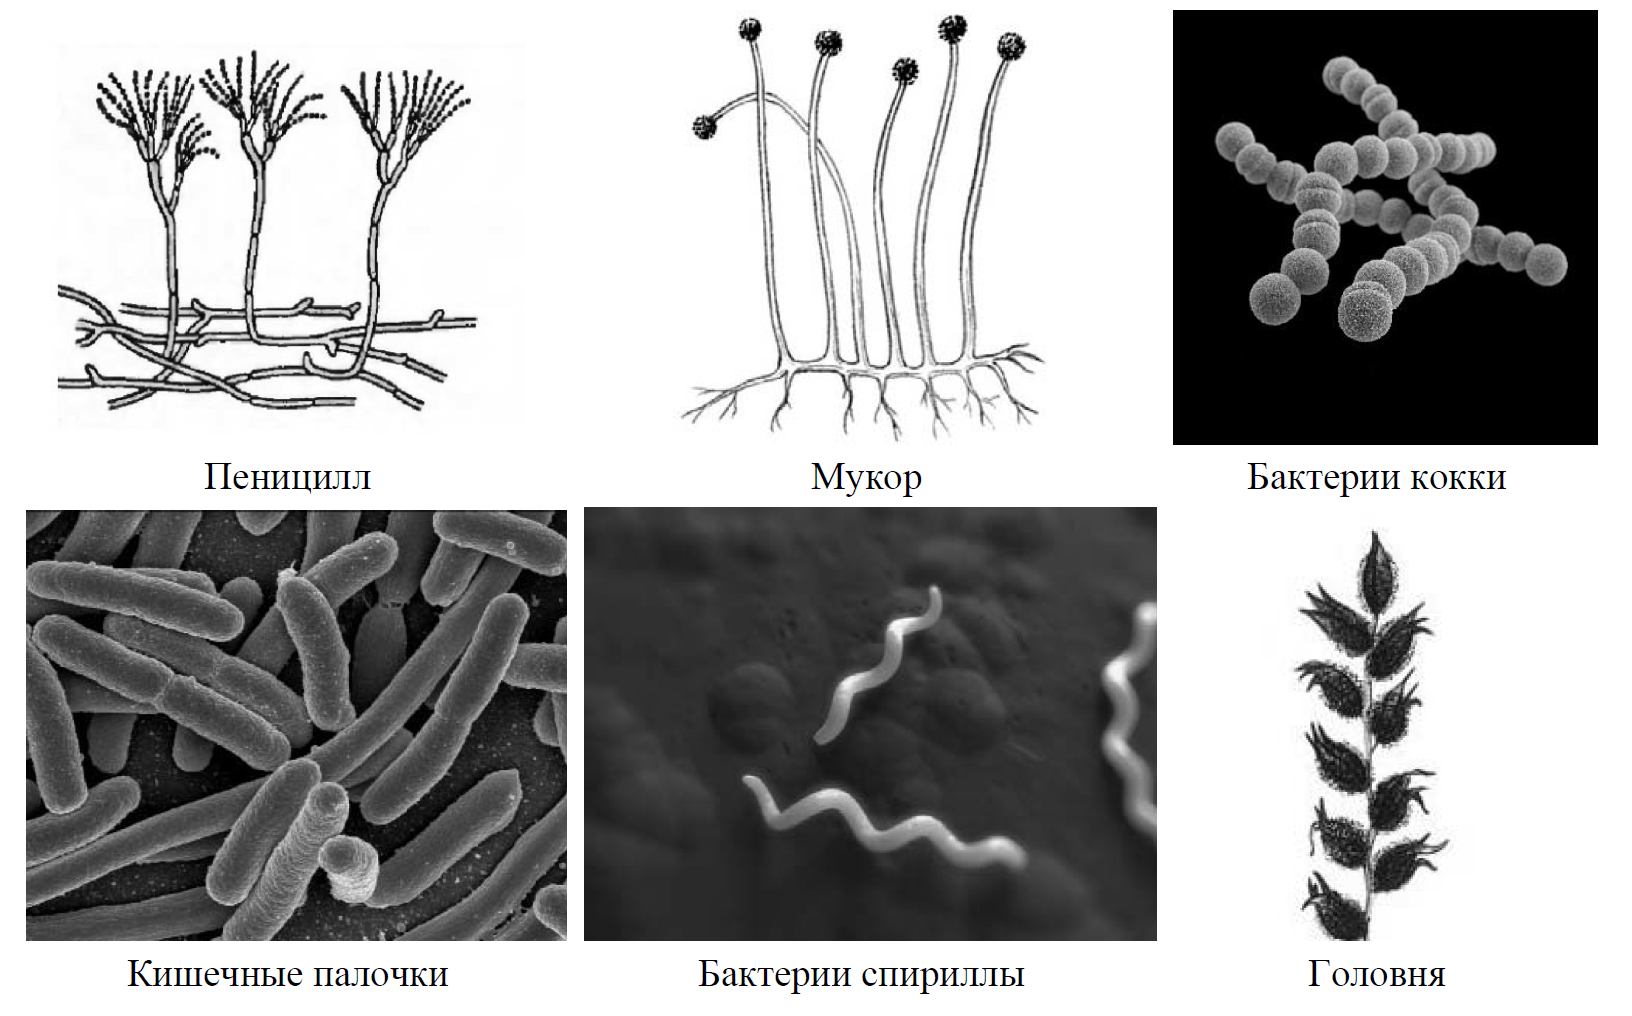 Рассмотрите изображение шести организмов пеницилл мукор